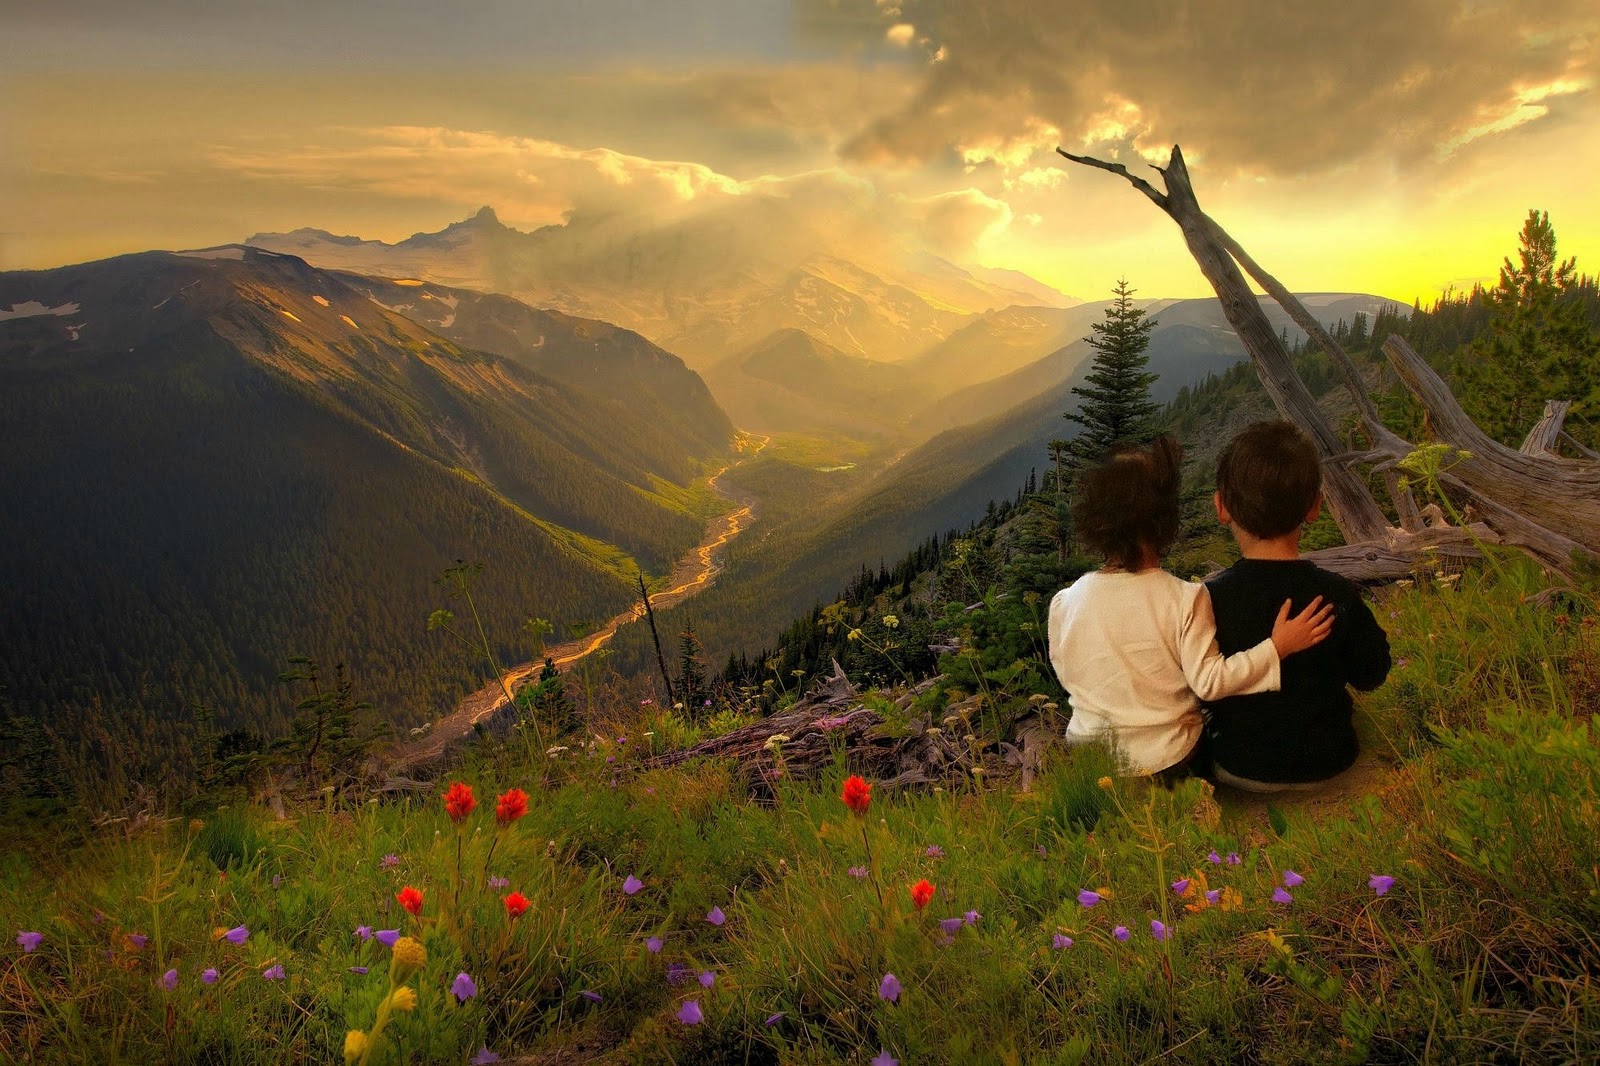 Природа любви описание. Пейзаж с людьми. Созерцание природы. Красивые пейзажи с людьми. Романтика в горах.